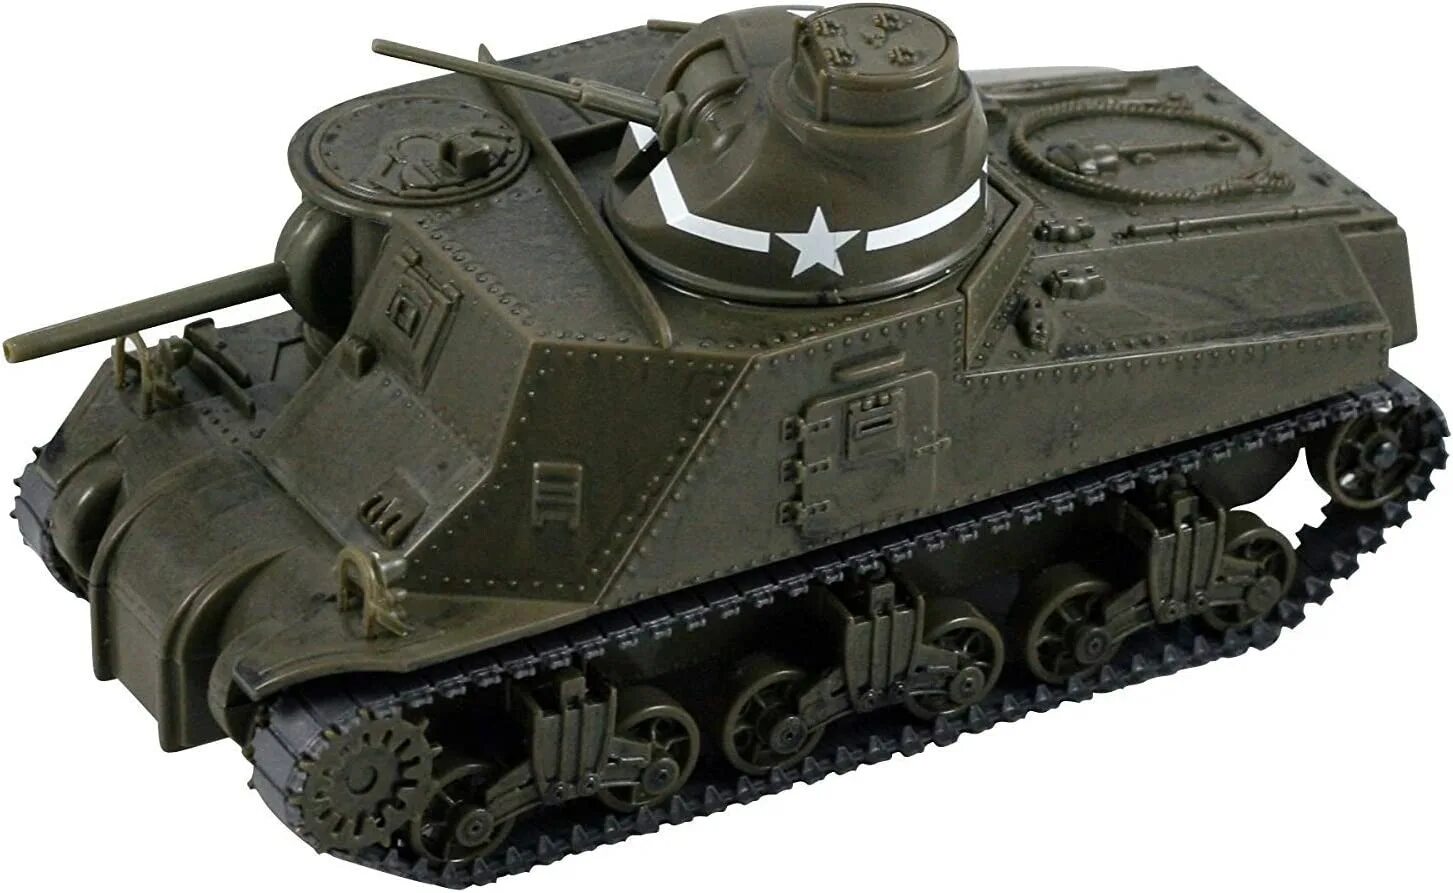 Tank kit. M3 Lee боковики. Модель танка т-195. О-Хо танк модель. Обвесы на модель танка.